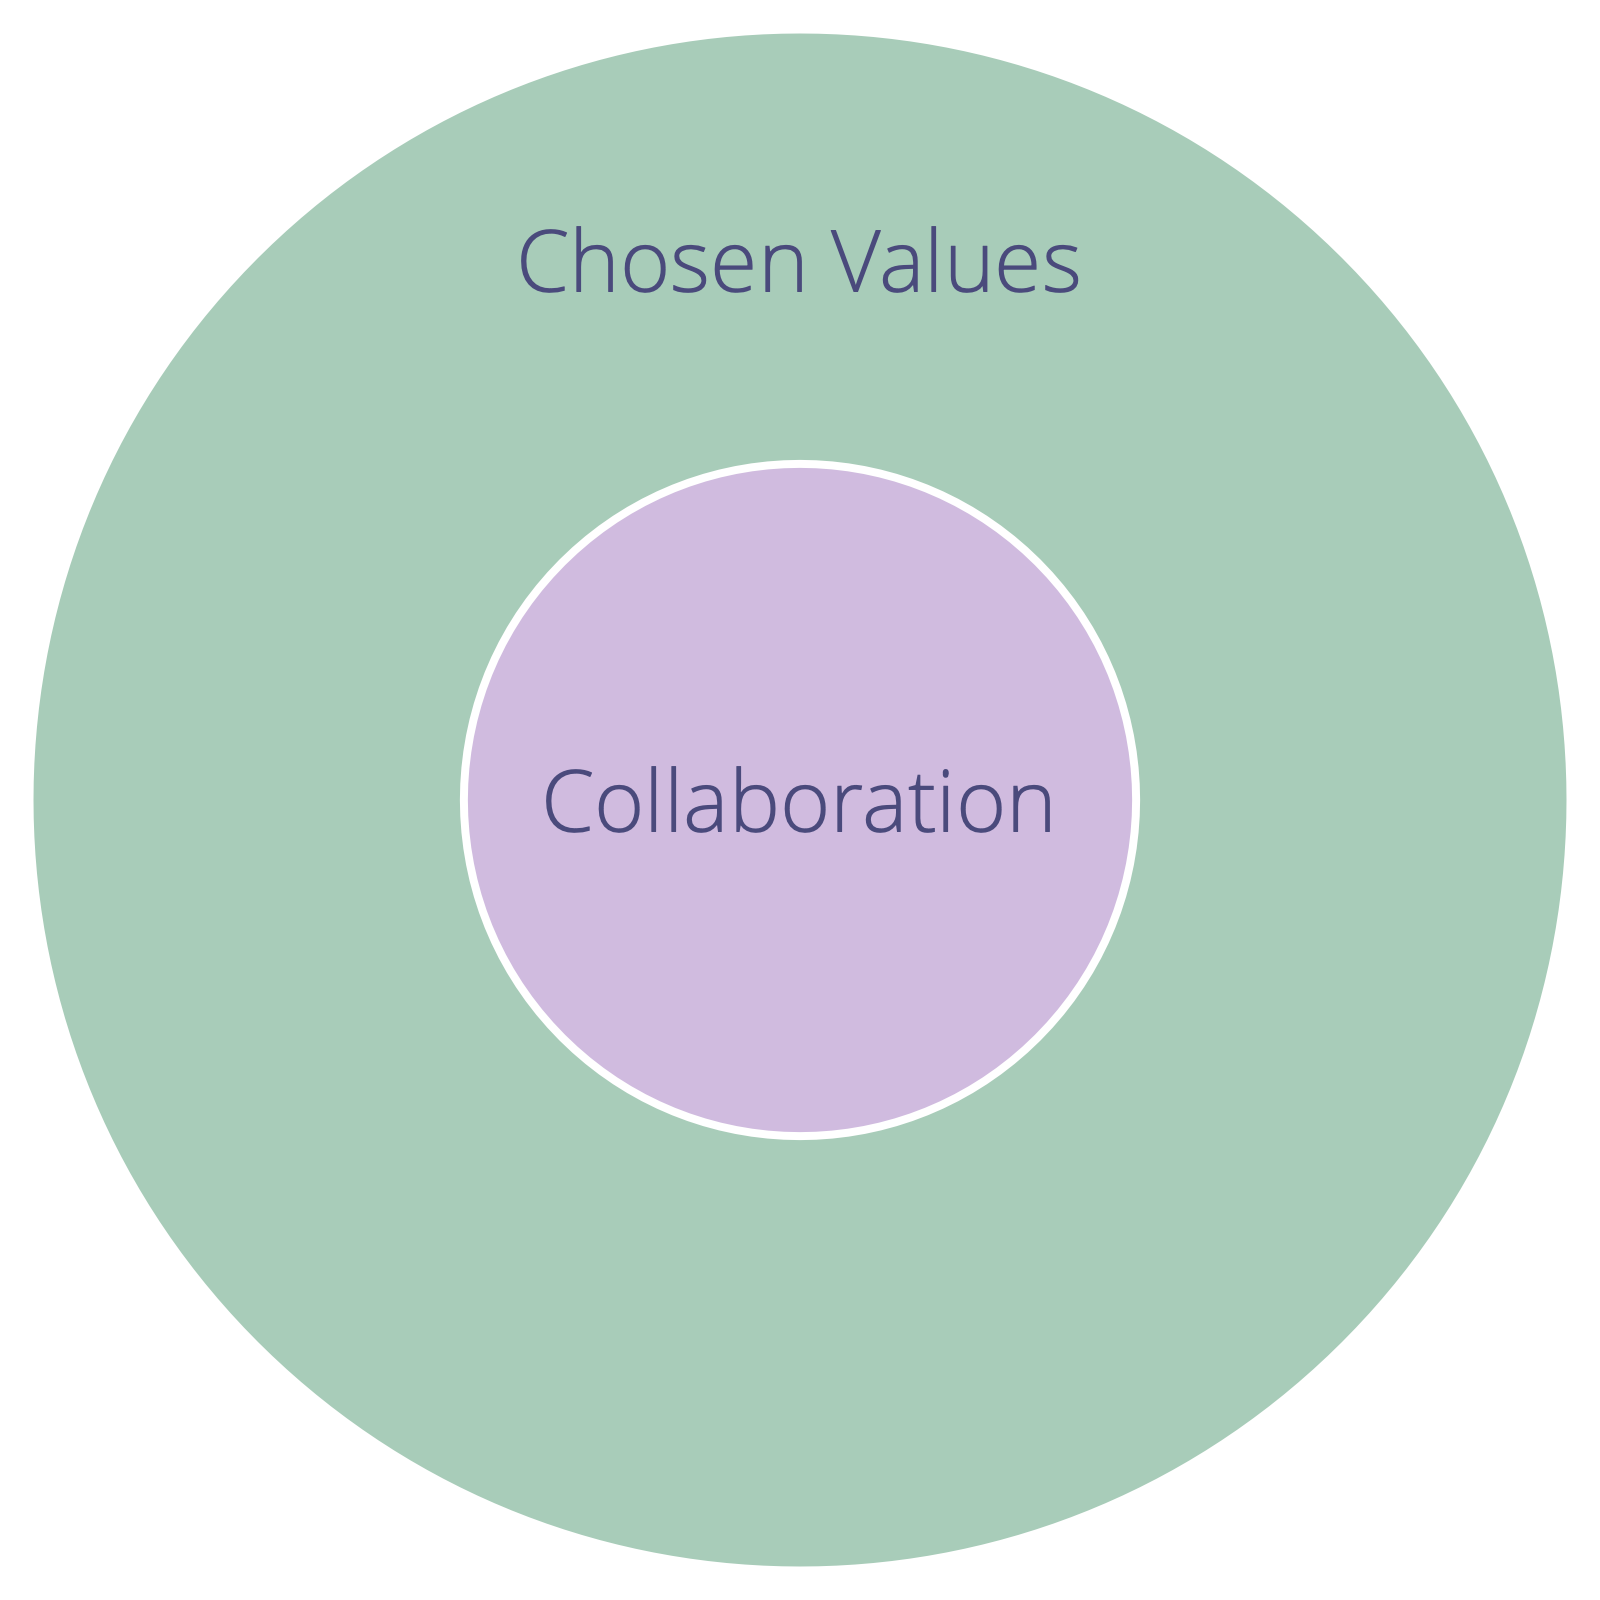 Valda värderingar definierar begränsningar för samarbete